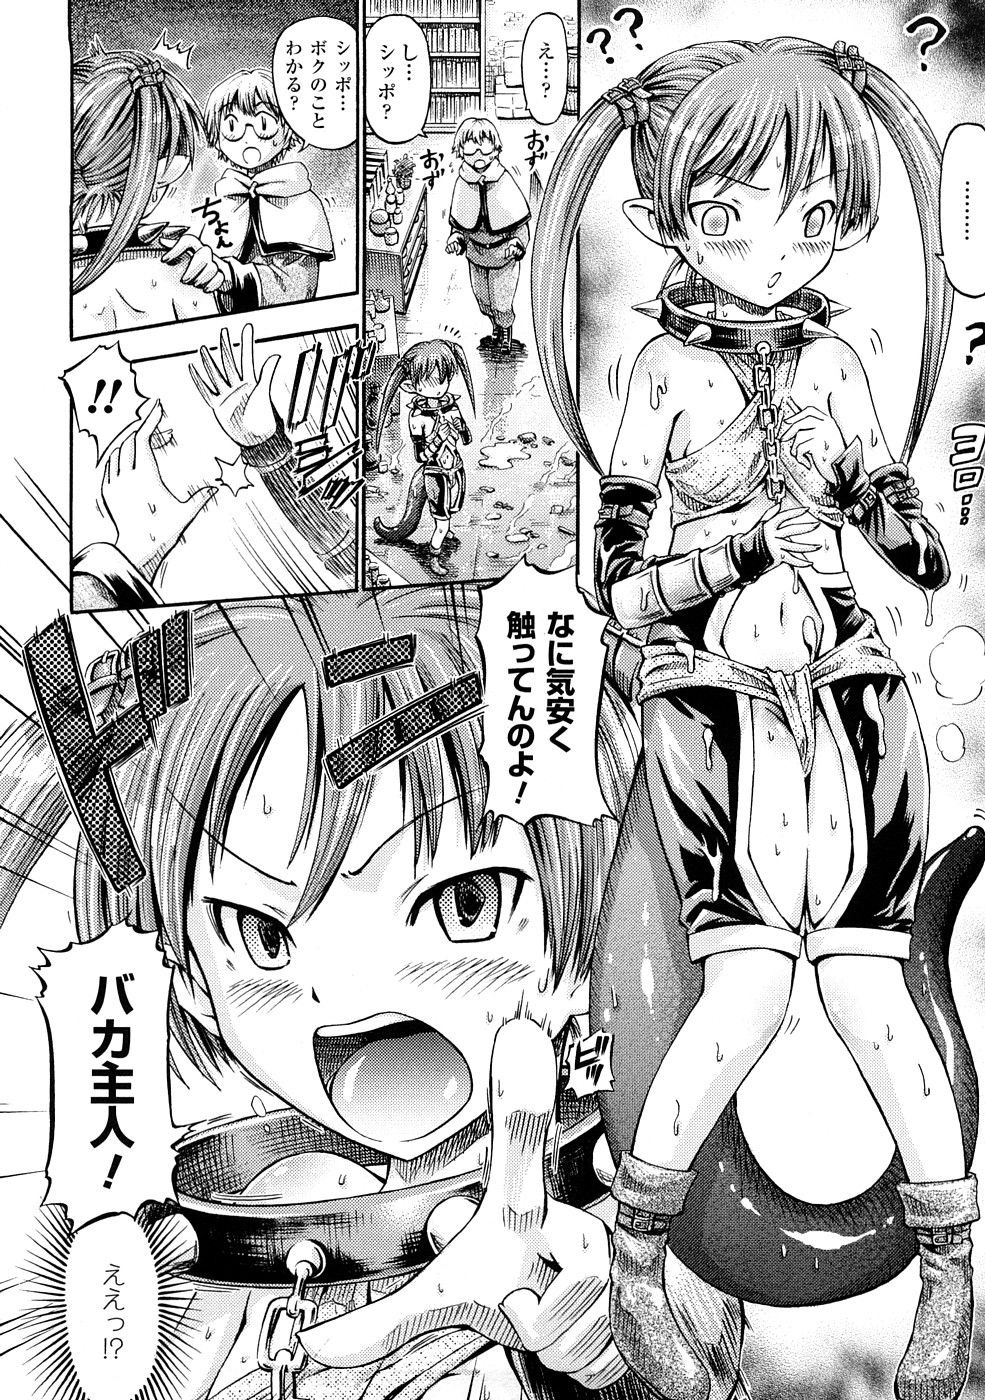 [Horitomo] Fairy Tales page 29 full